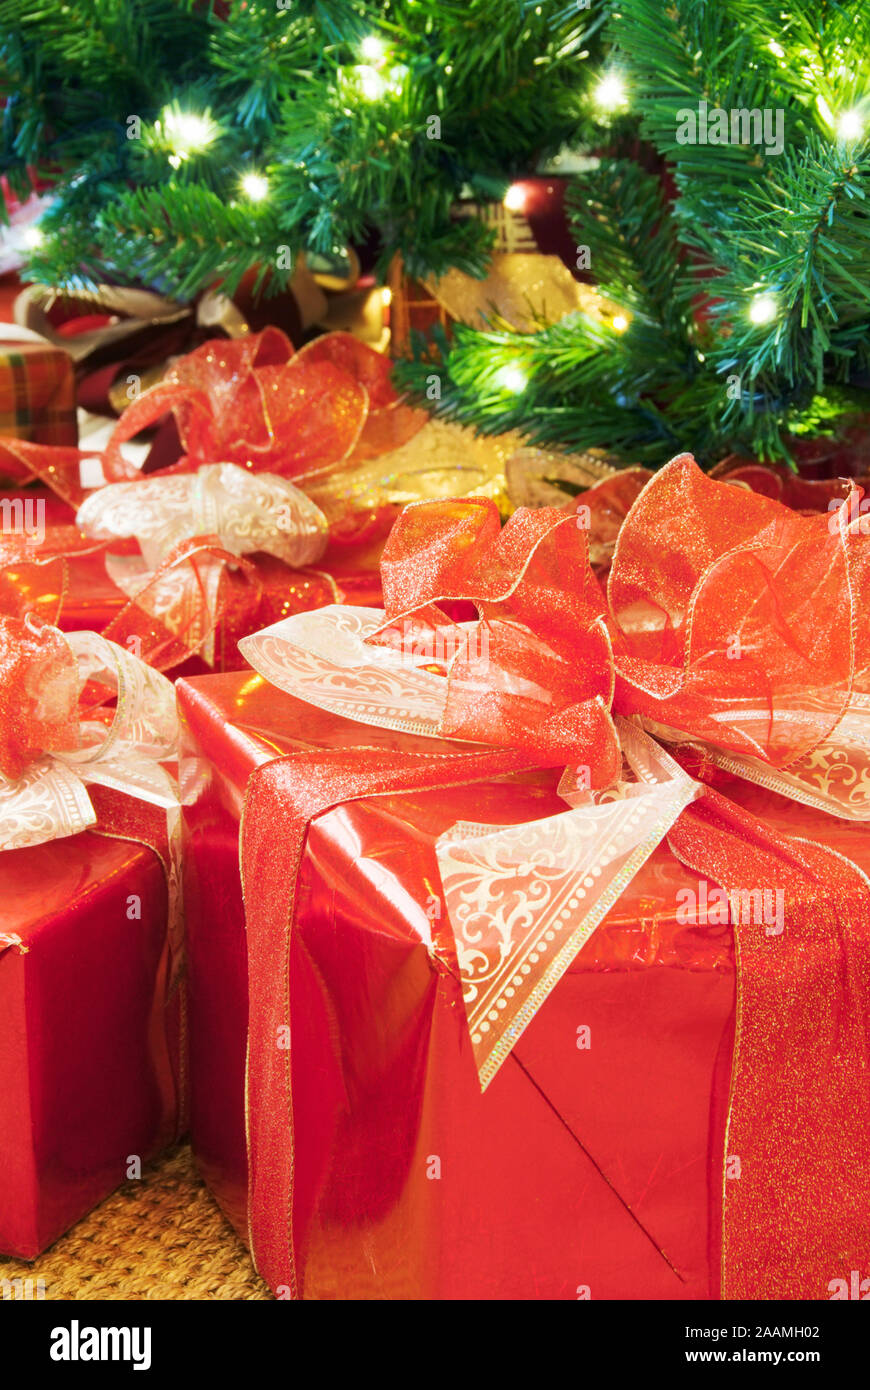 Grandes regalos envueltos en papel brillante rojo con arcos decorativos y cintas debajo de un árbol de Navidad. Foto de stock